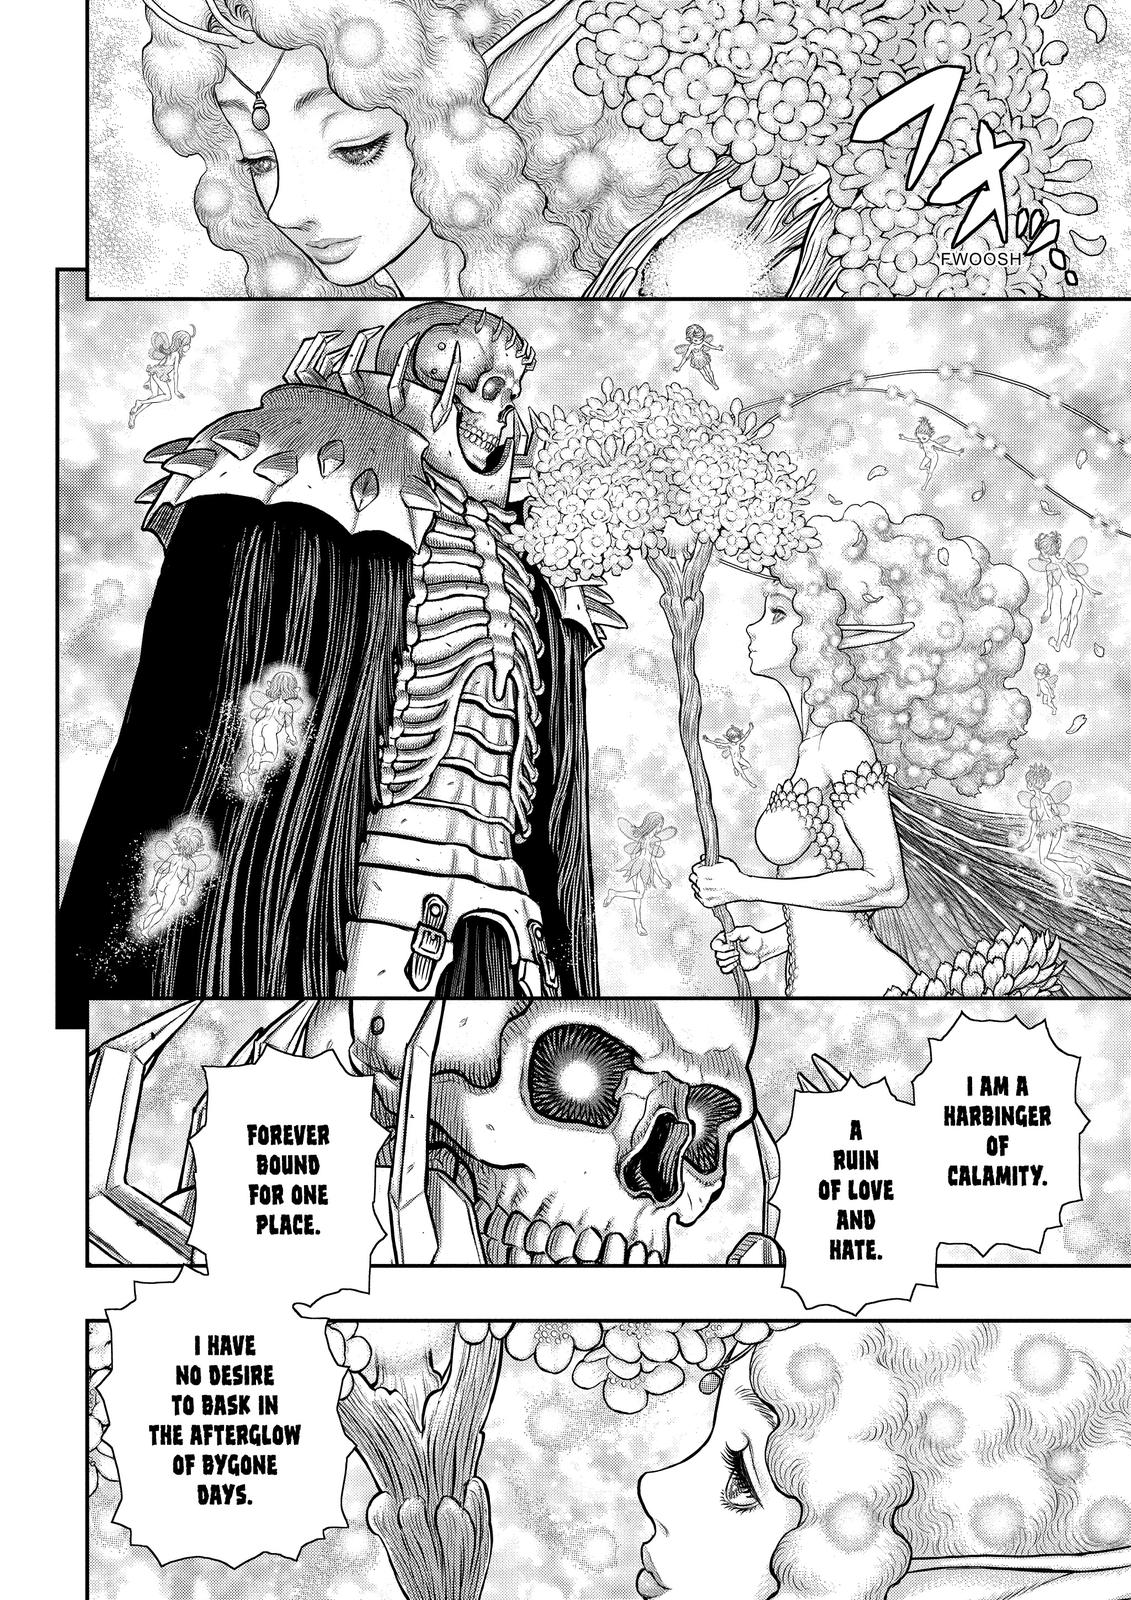 Berserk Manga Chapter 363 image 04